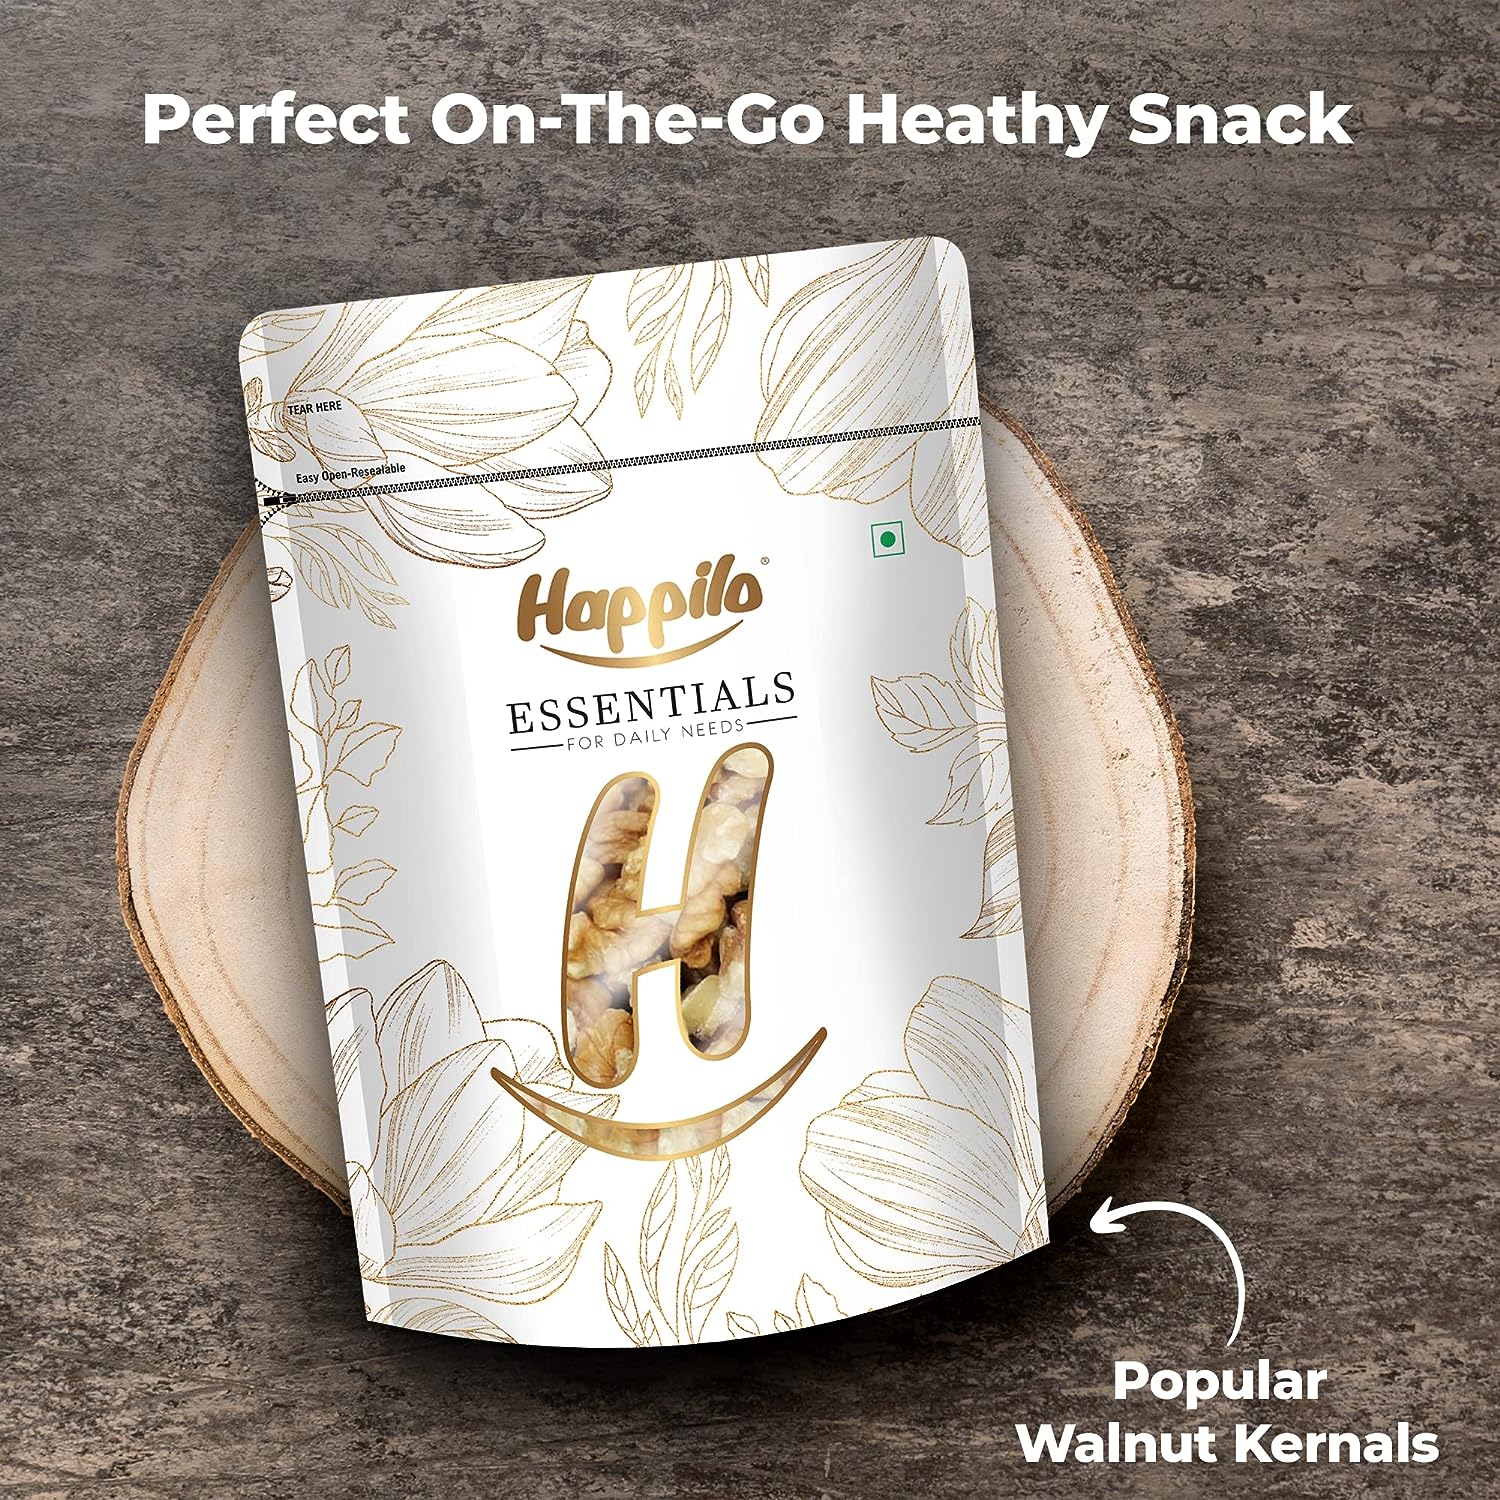 Happilo Essentials Popular Walnuts Kernels Quarter